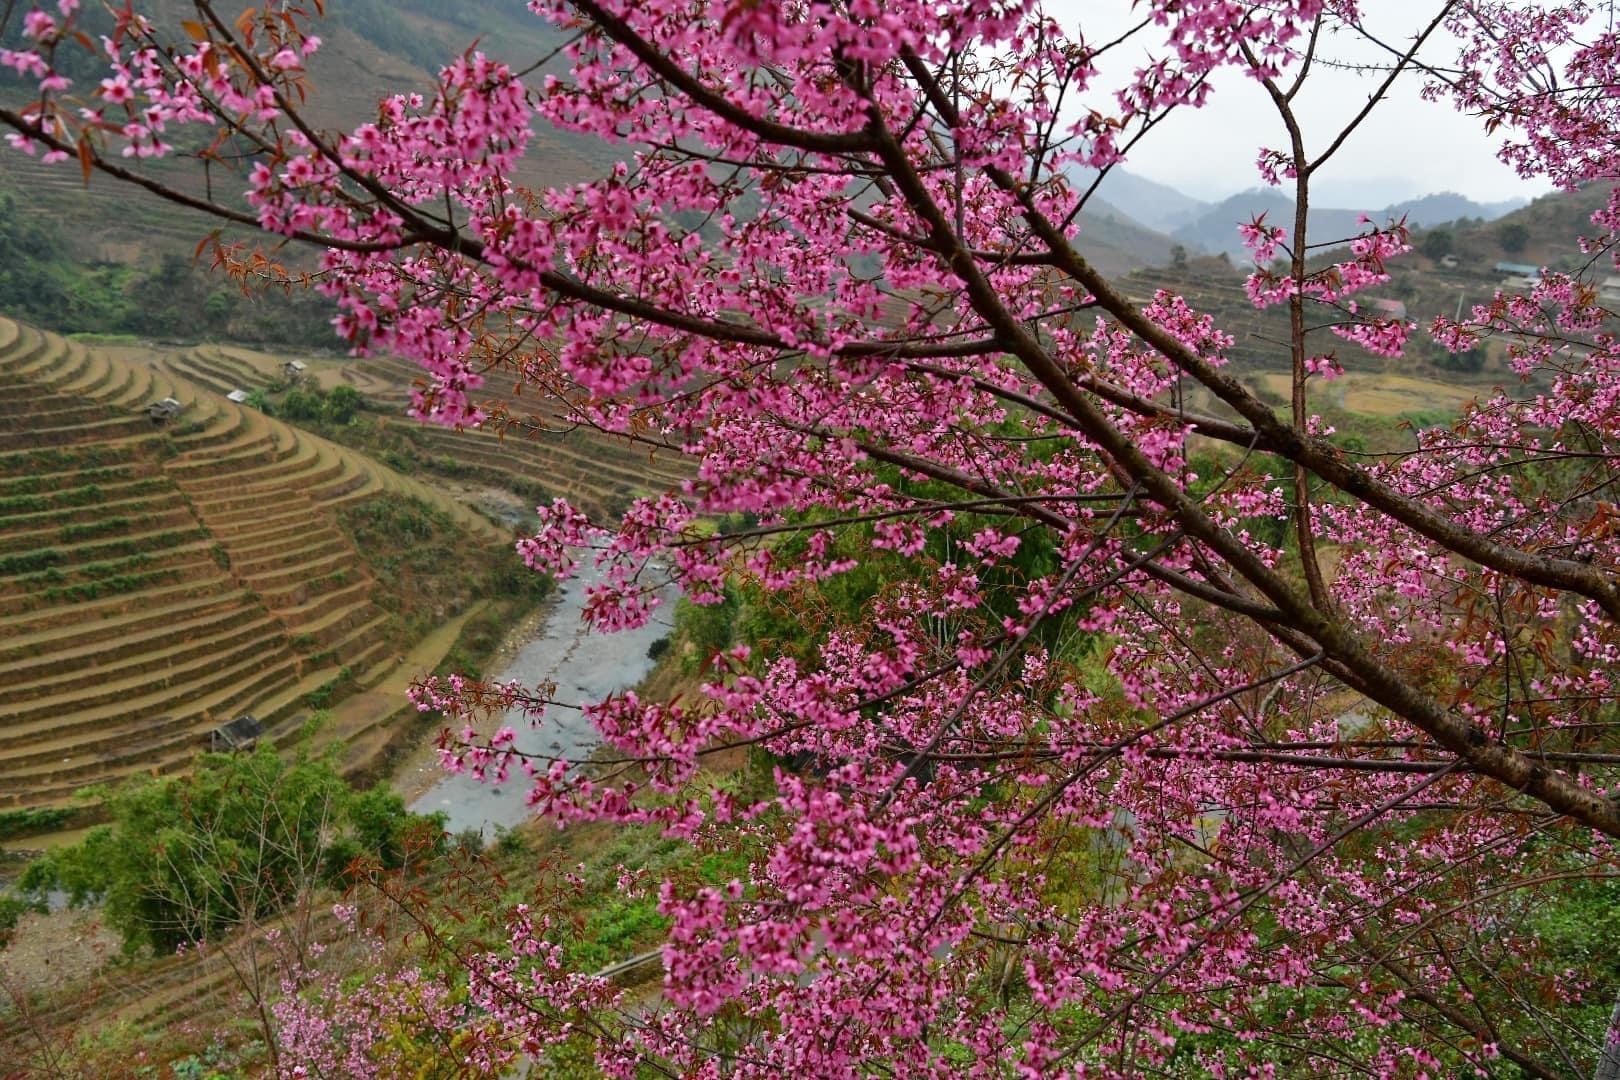 Chiêm ngưỡng sắc hoa tớ dày nhuộm hồng núi rừng Mù Cang Chải - Ảnh 11.